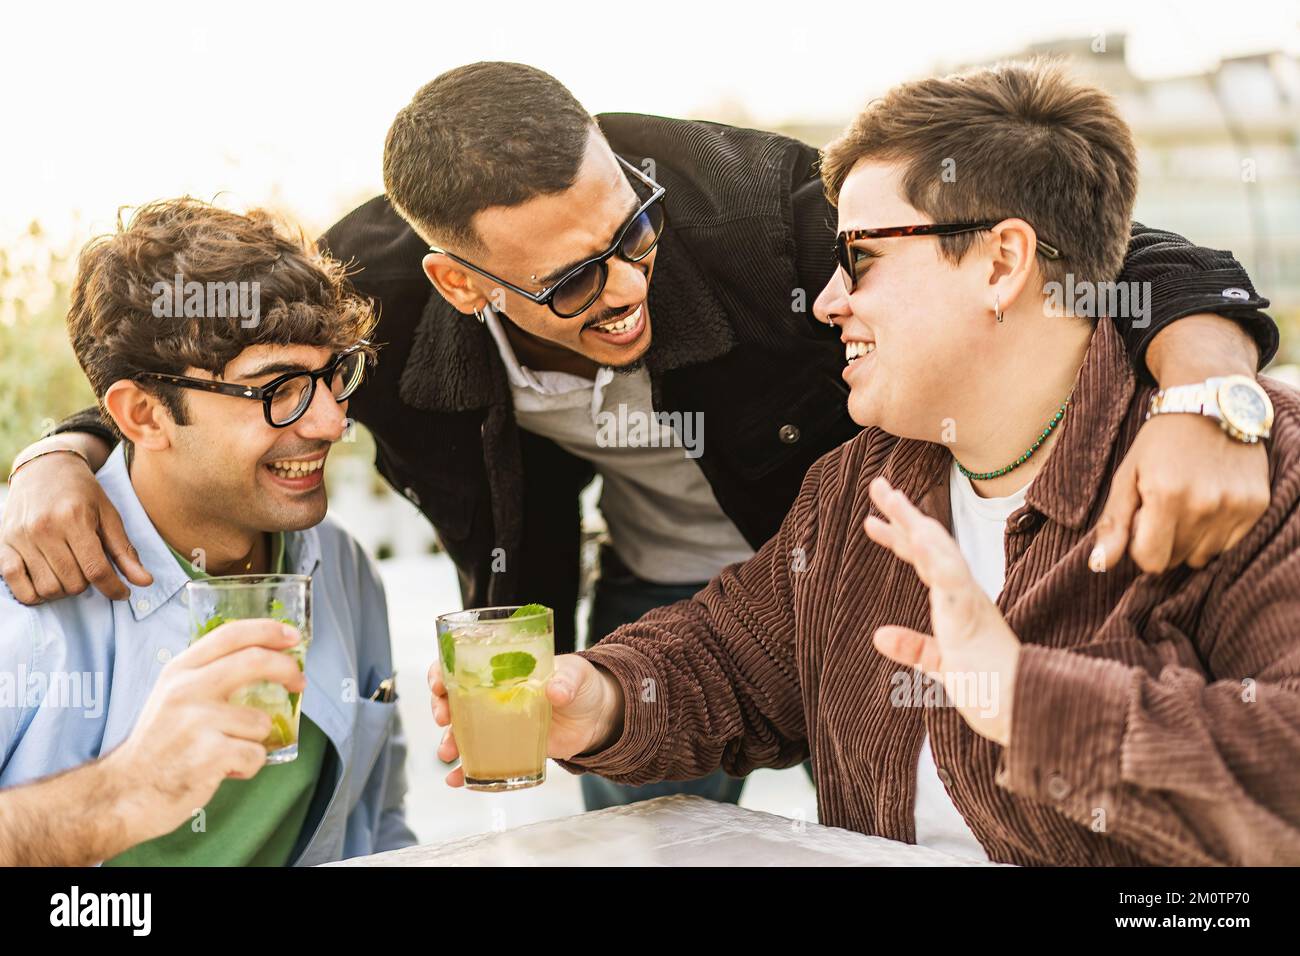 Eine vielfältige Gruppe von Freunden, die Spaß beim Trinken von Mojito-Cocktails haben und sich im Pub im Freien treffen - Integration, Vielfalt und Menschenleben Stockfoto